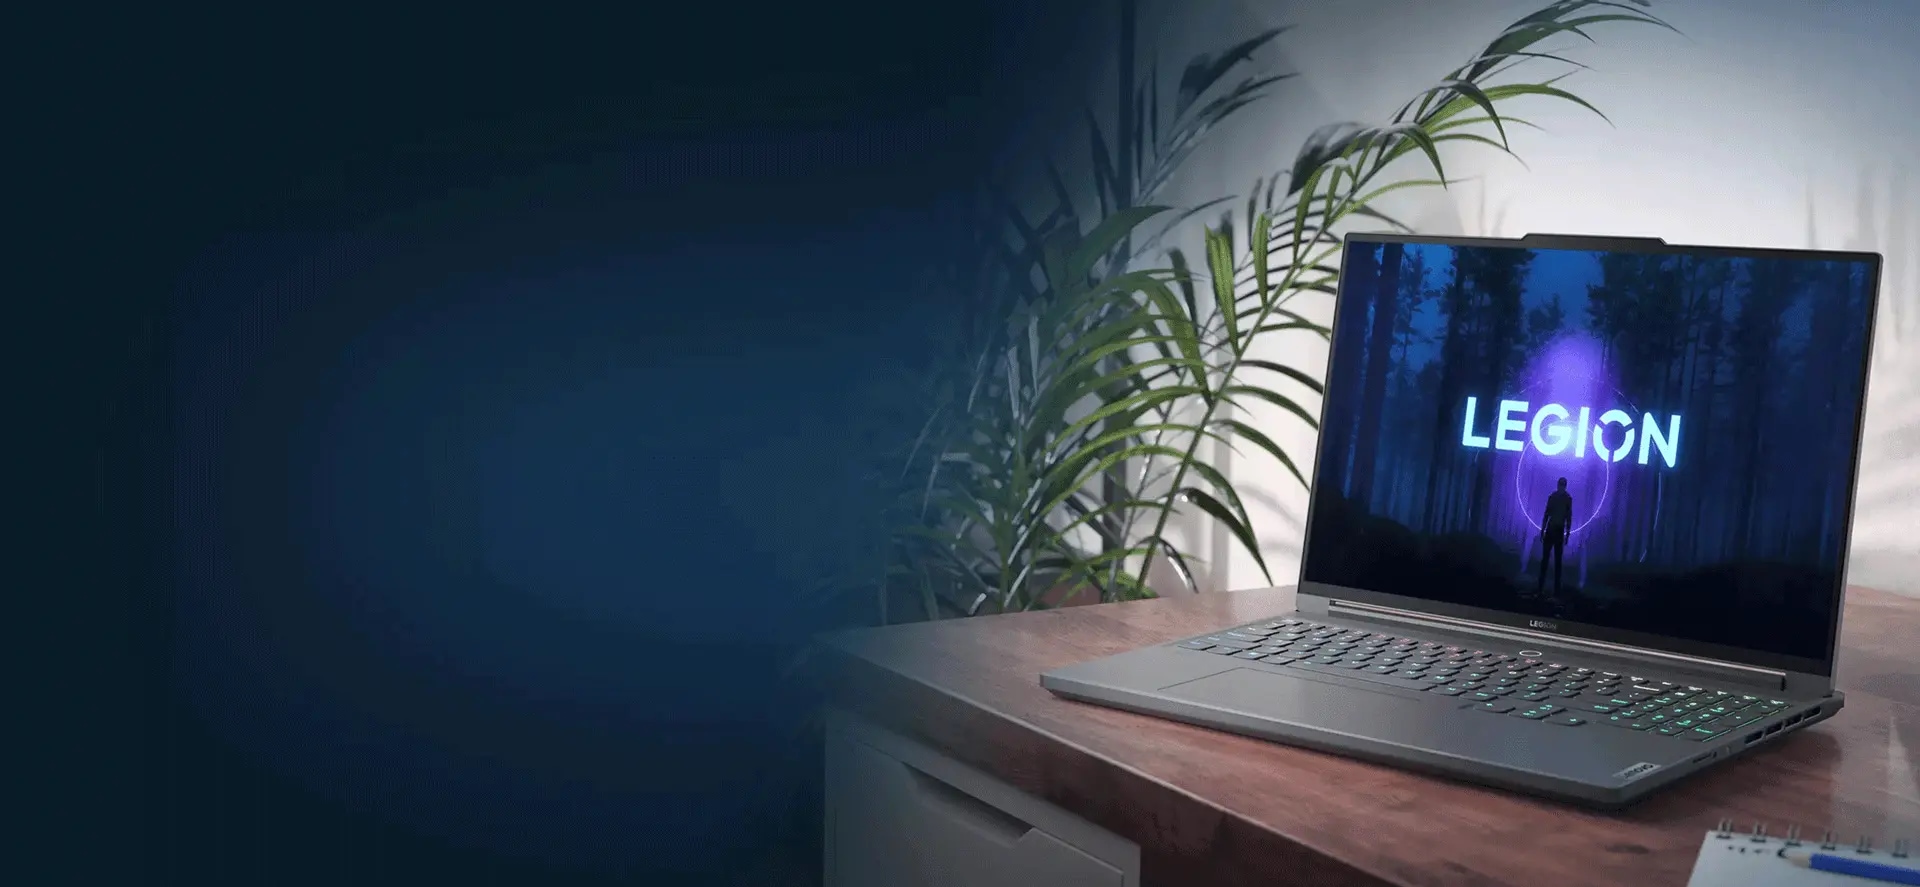 Bild snett från vänster av Lenovo Legion Slim 7 där den står på ett skrivbord med Legion-logotypen synlig på skärmen och med växter till vänster om skrivbordet i bakgrunden